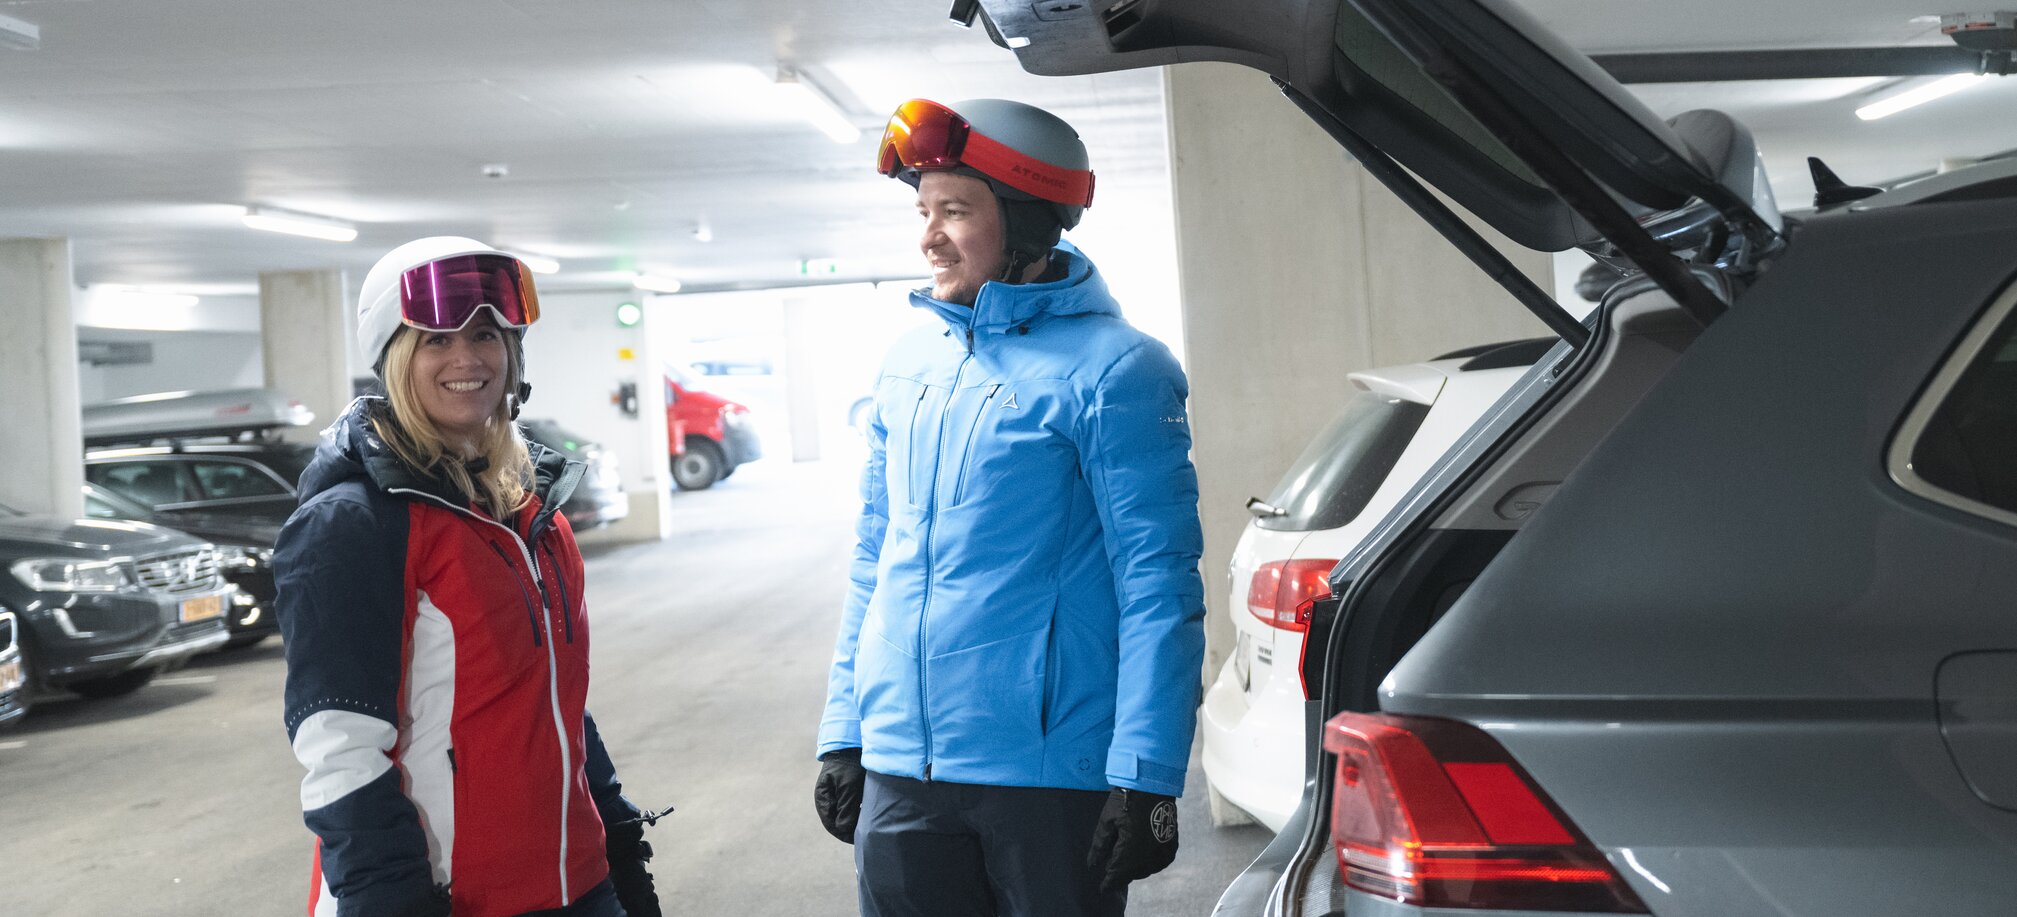 Zwei Personen in Skianzug und mit Skihelm stehen neben einem geöffneten Kofferraum eines grauen Autos | © Ski amadé